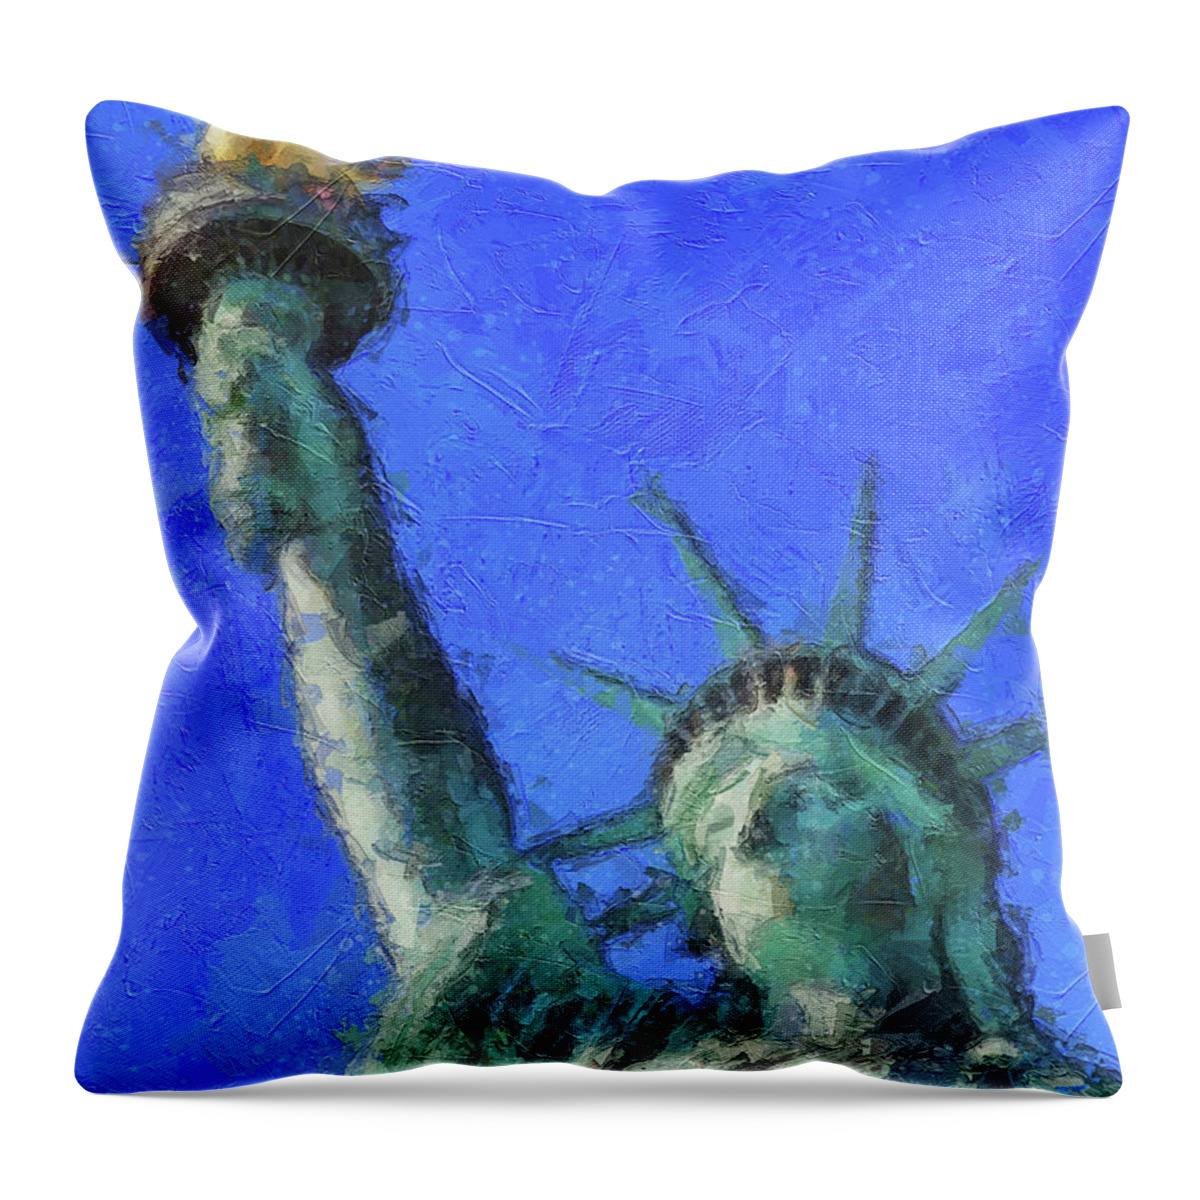 Lady Liberty Panting Throw Pillow featuring the painting Lady Liberty Painting by Dan Sproul